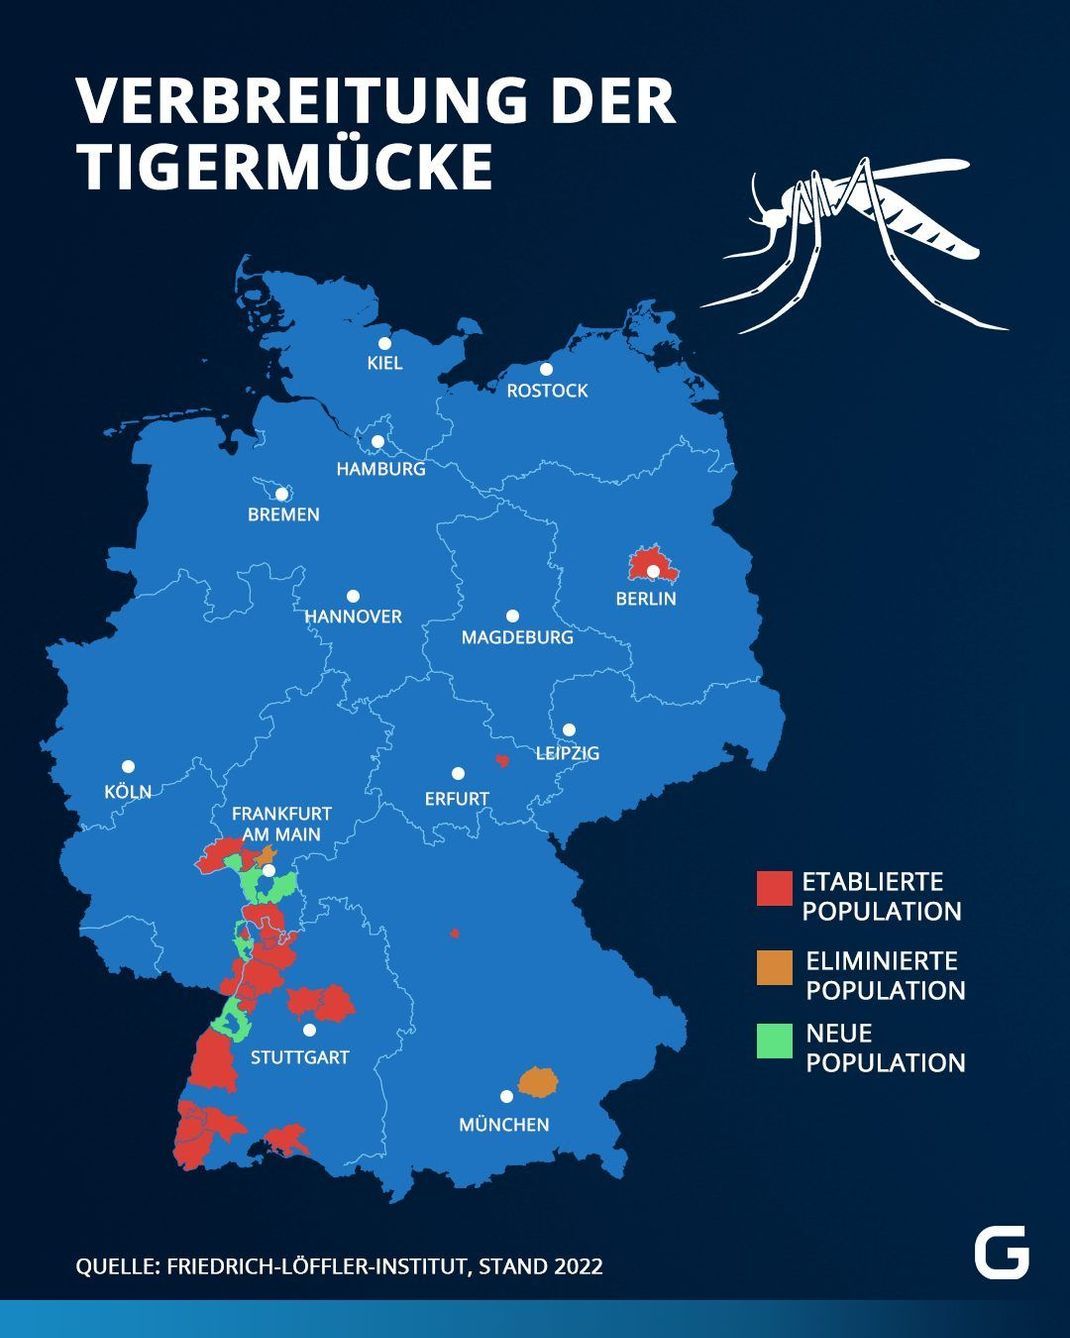 In diese Bereichen Deutschlands wurde die Tigermücke 2022 gesichtet. Einige Populationen konnten eliminiert werden, andere kamen dagegen neu hinzu.